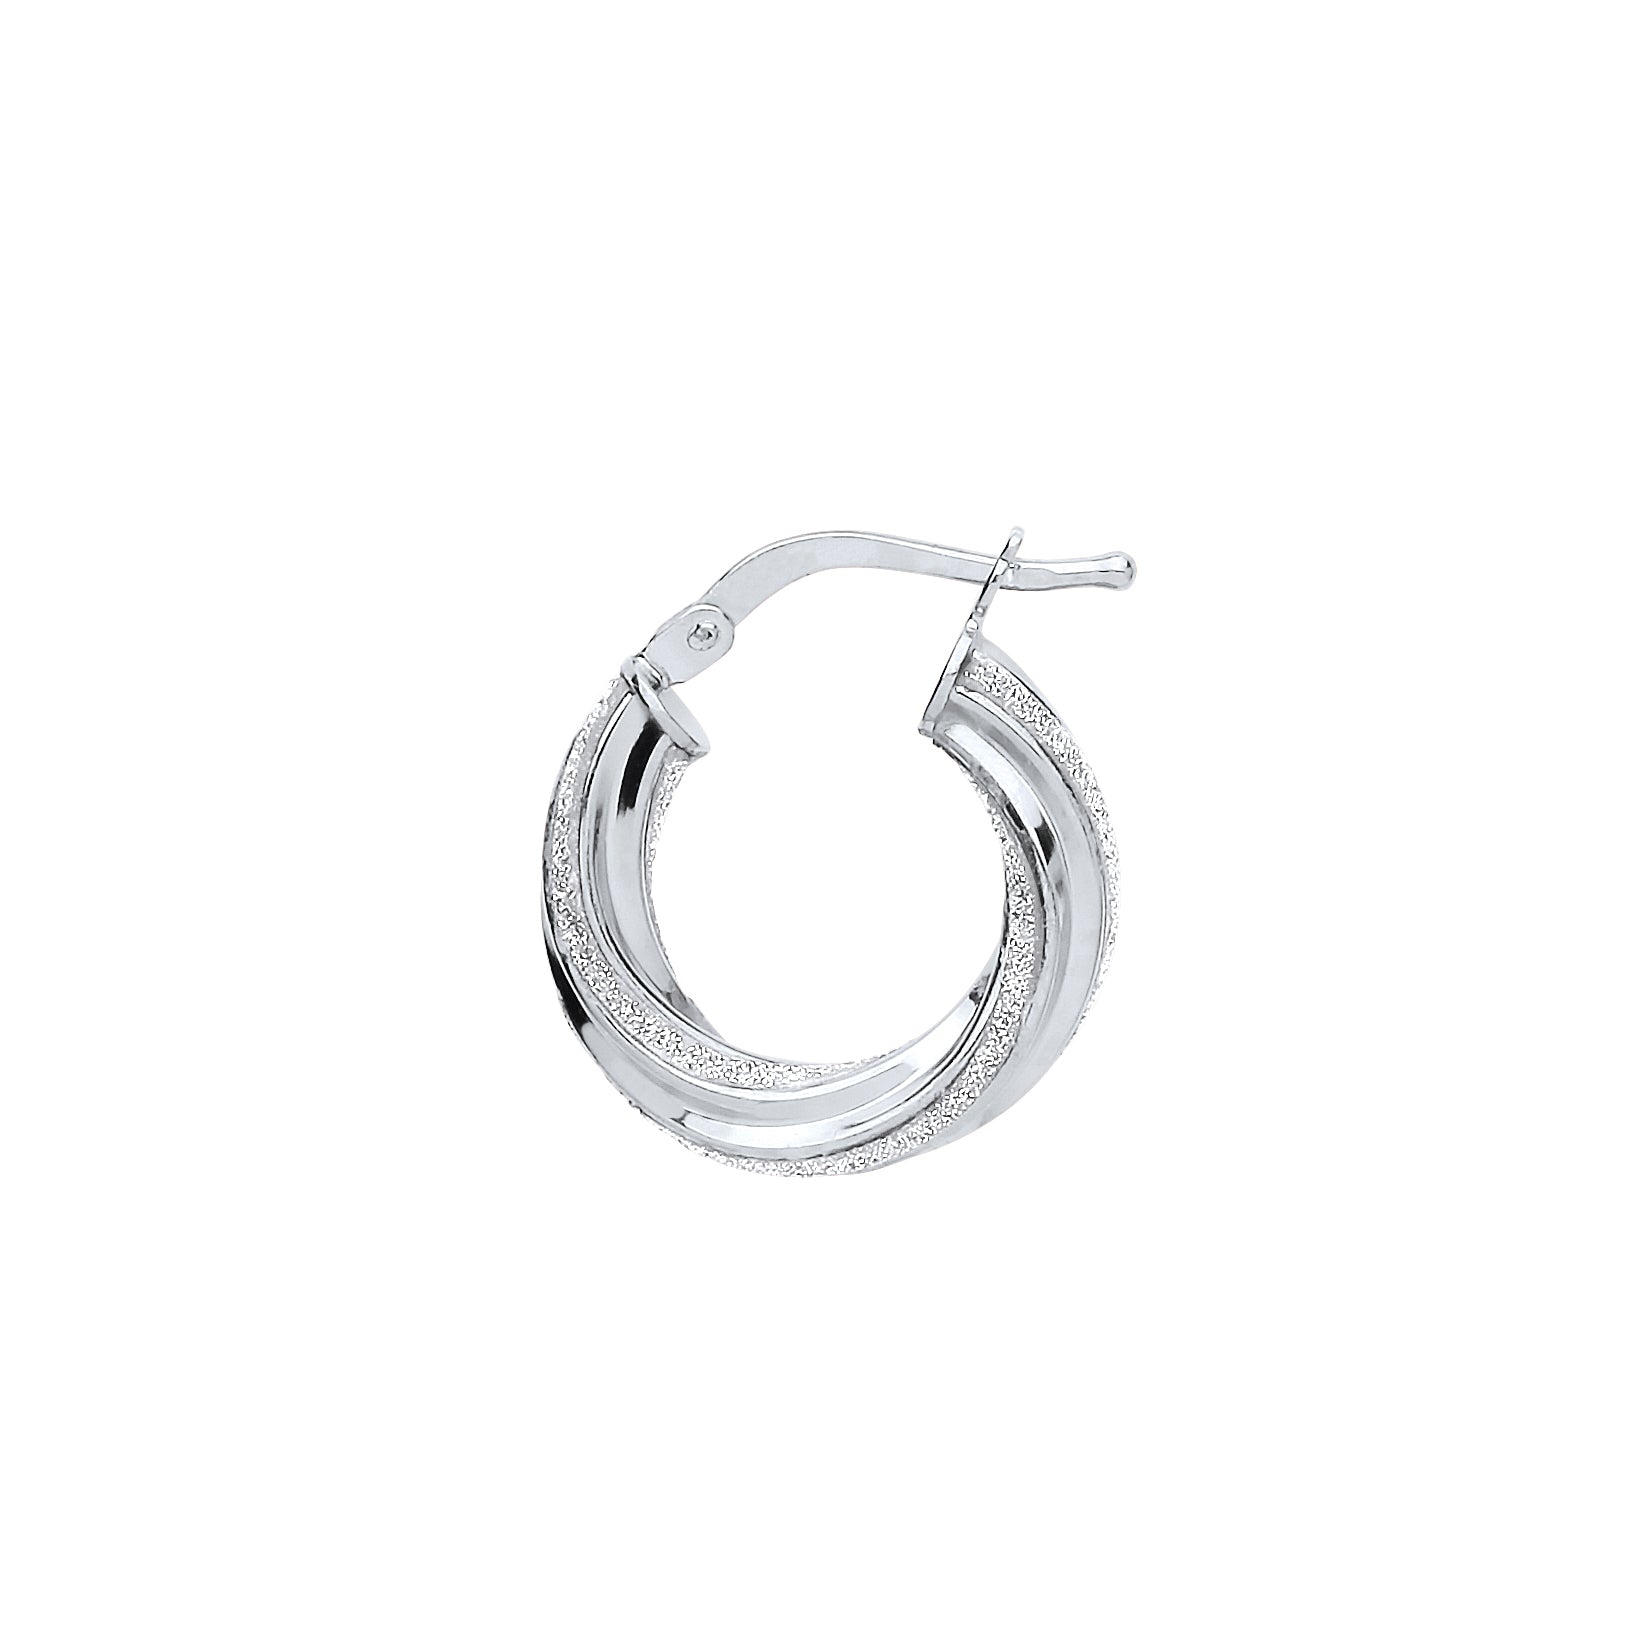 Silver  Licorice Twist Moondust Hoop Earrings 17mm - GVE891